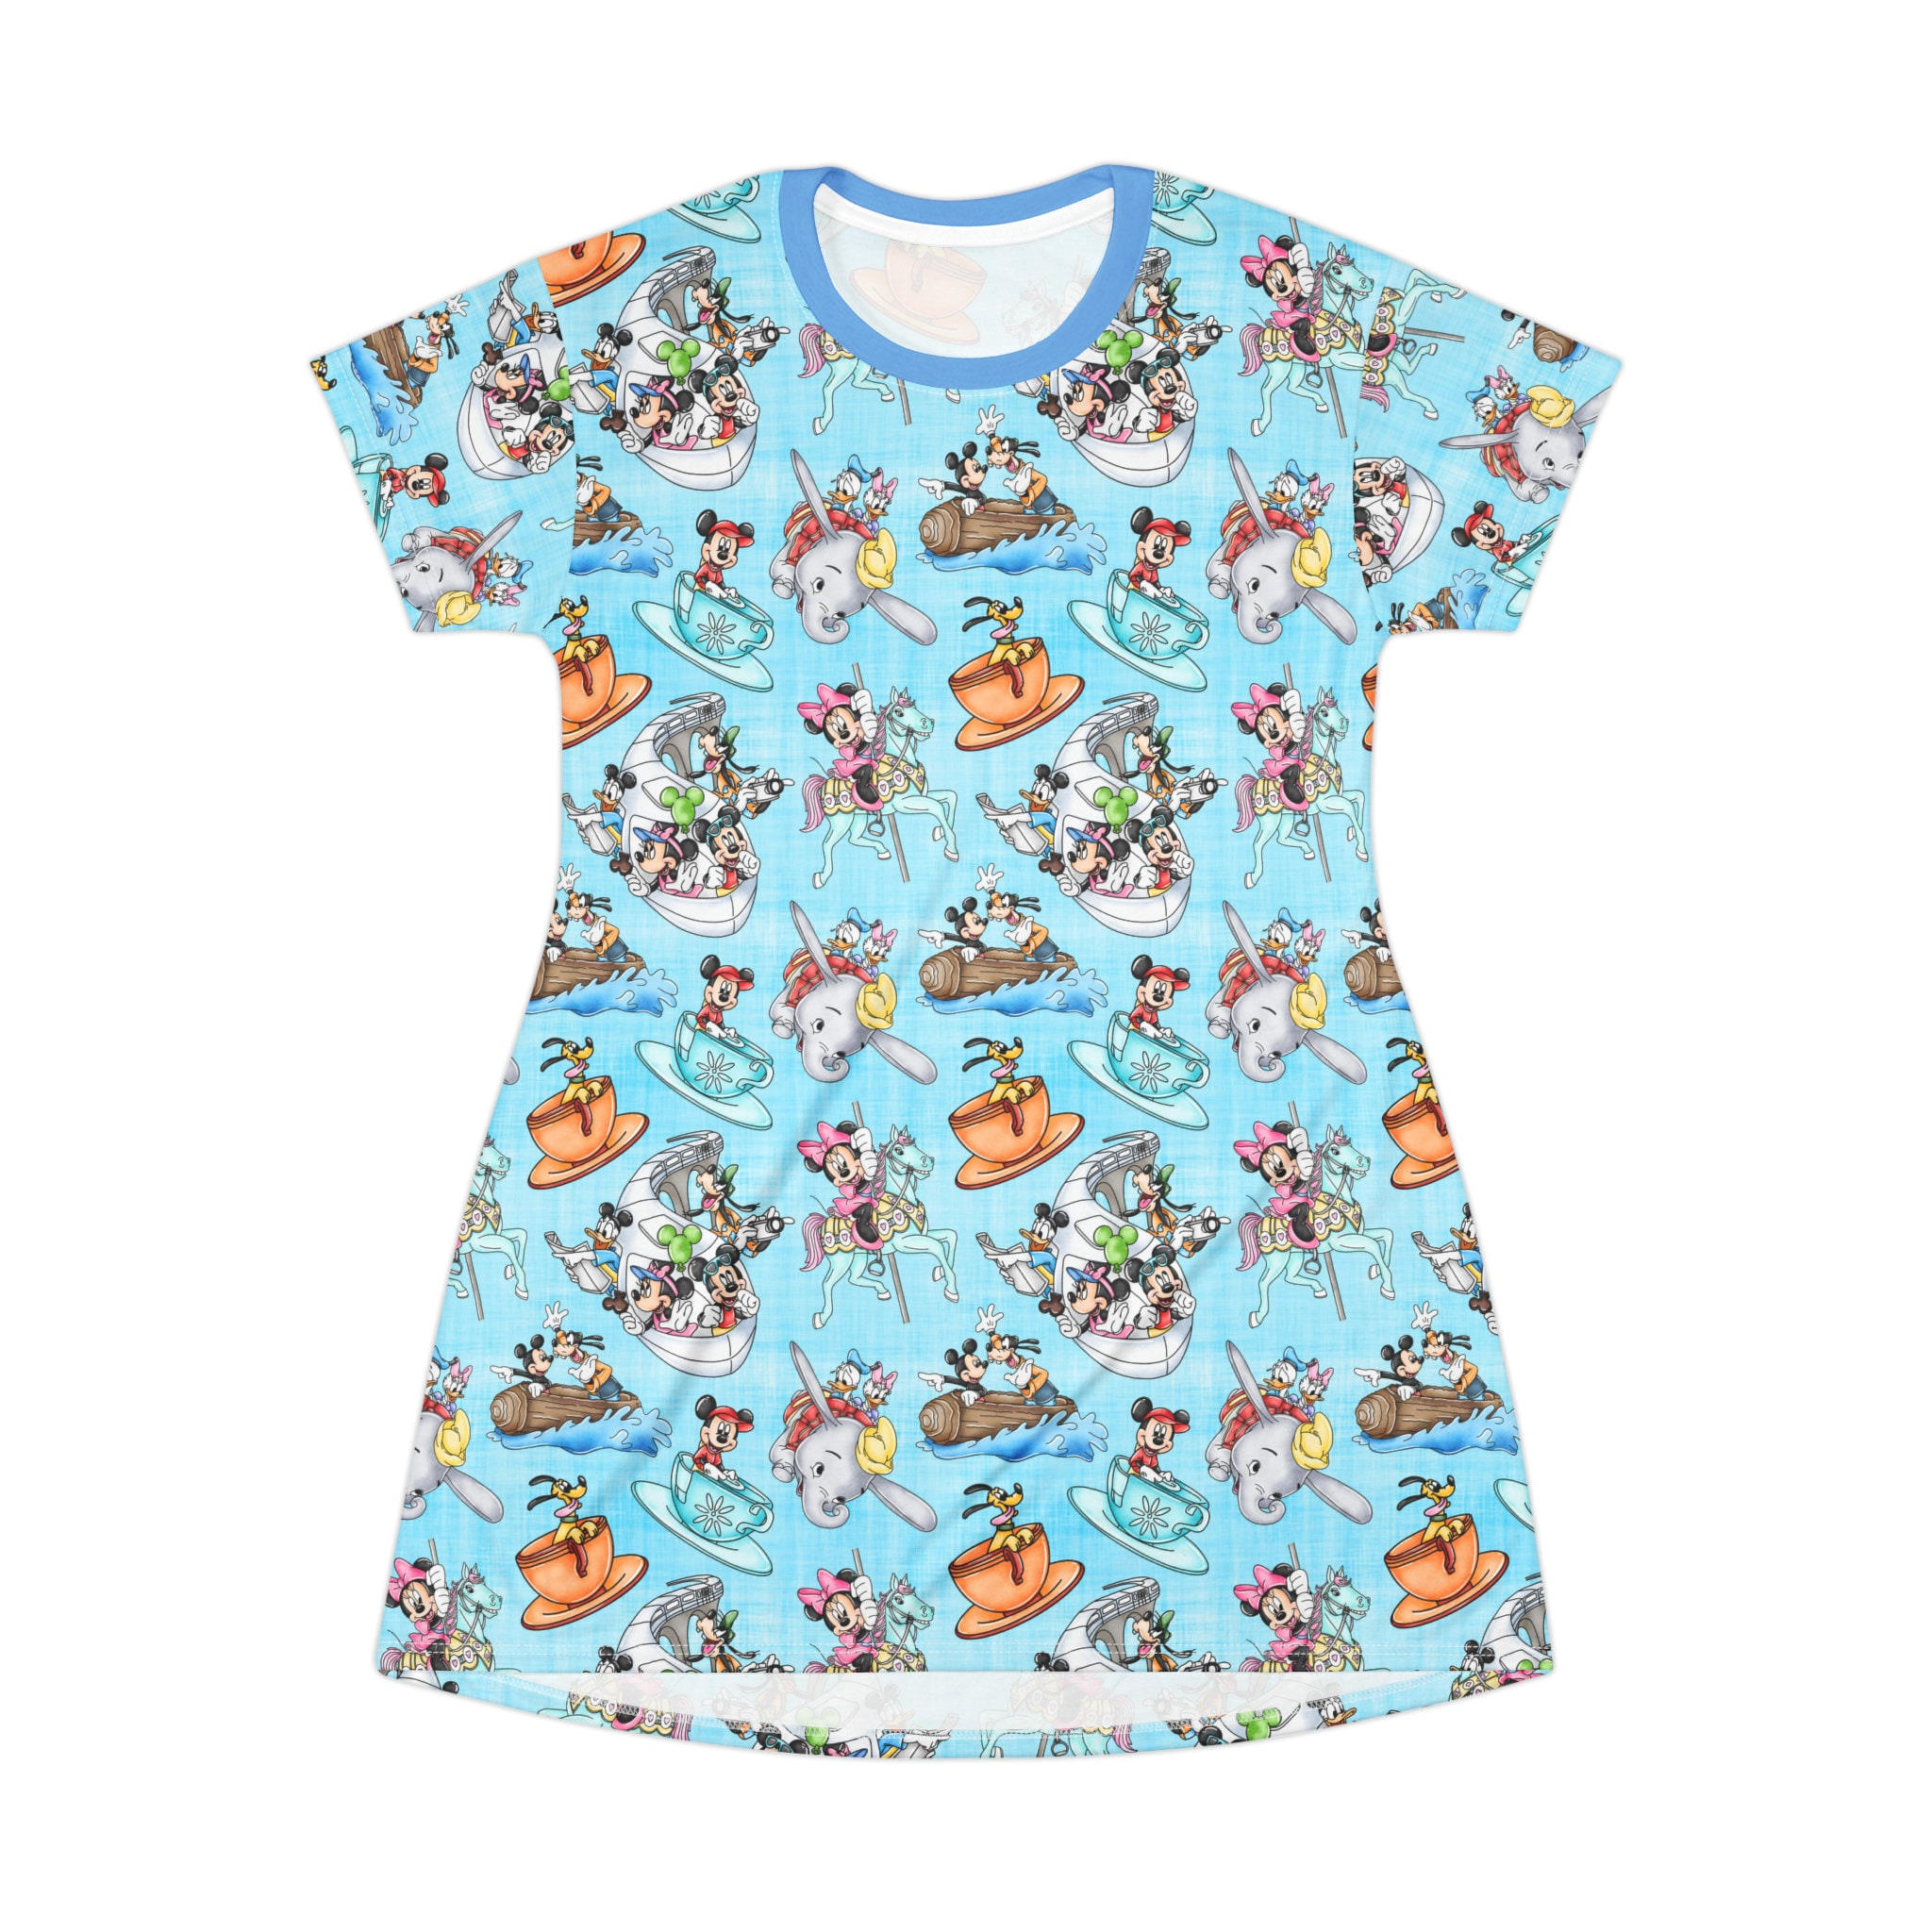 Disney Rides Disney T-Shirt Dress, Cartoon Women's T-Shirt Dress